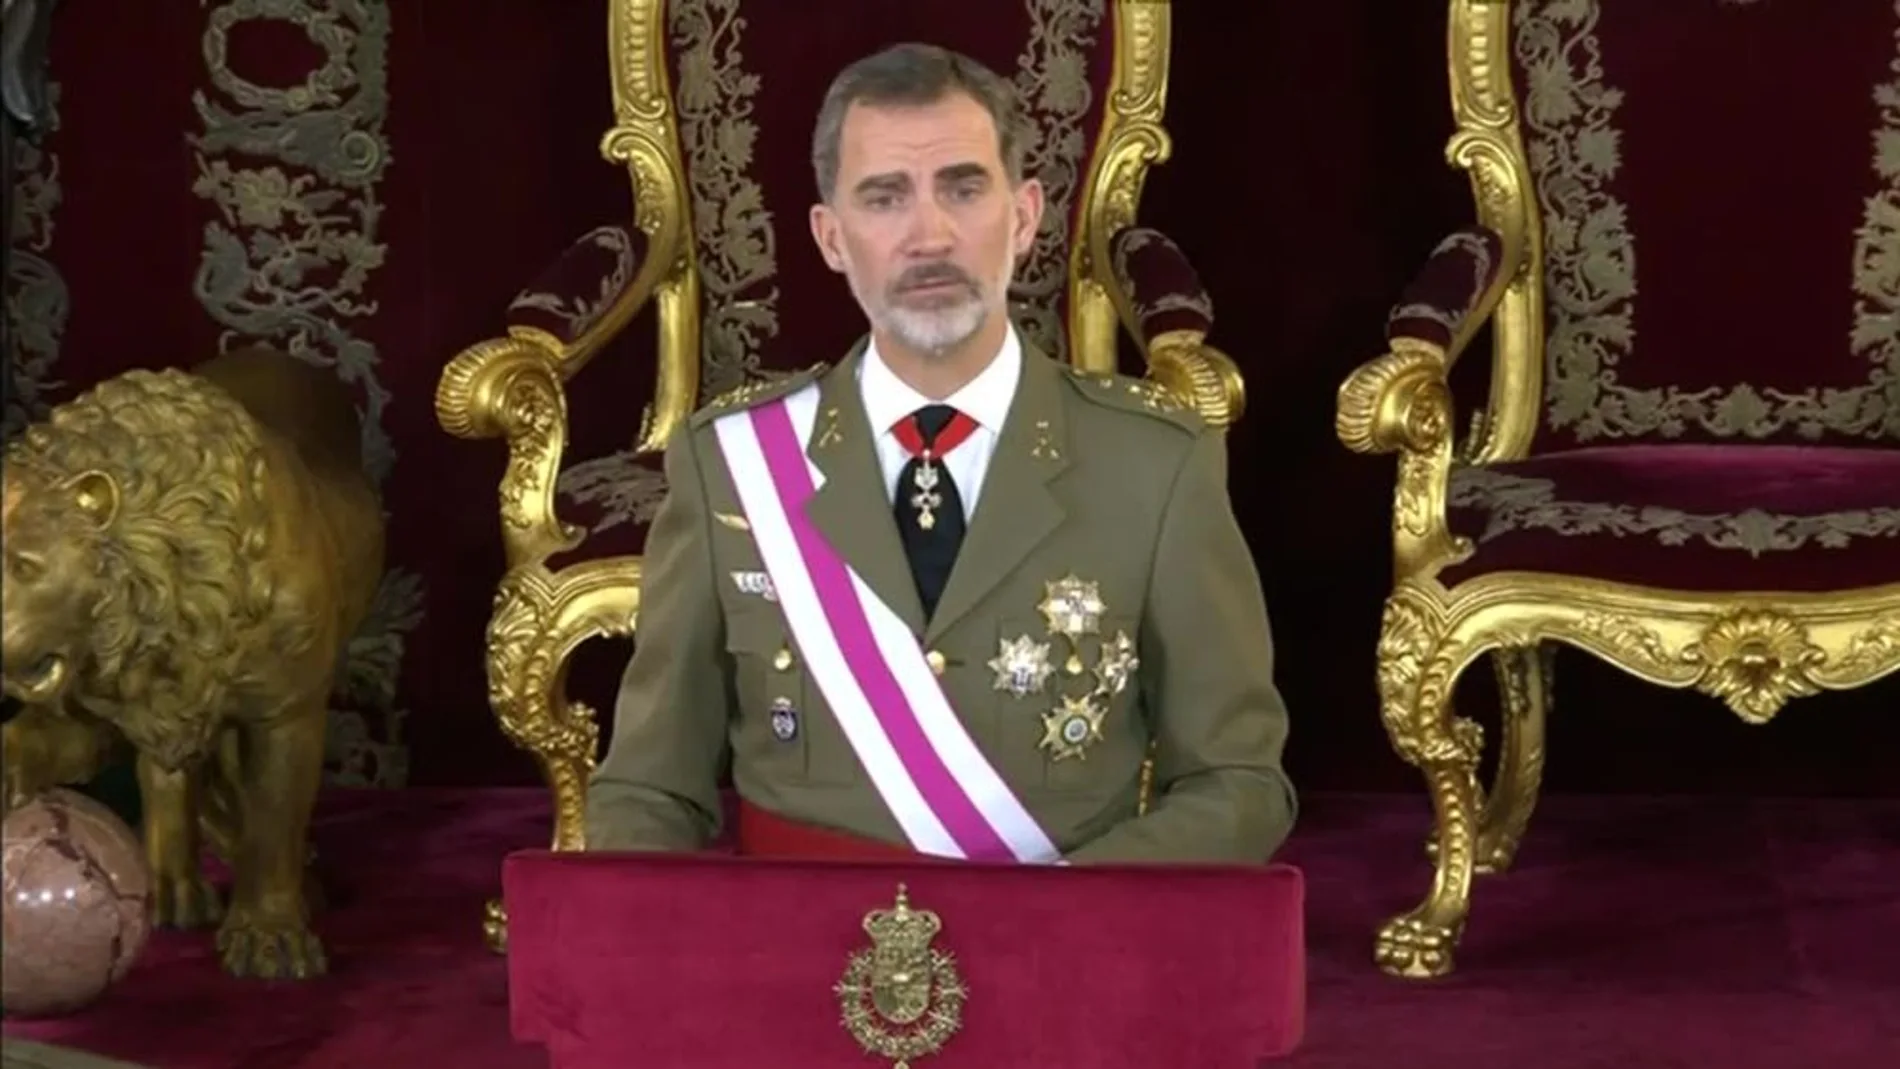 Noticias fin de semana (06-01-19) El Rey ensalza la bandera española como símbolo del "conjunto" de la nación